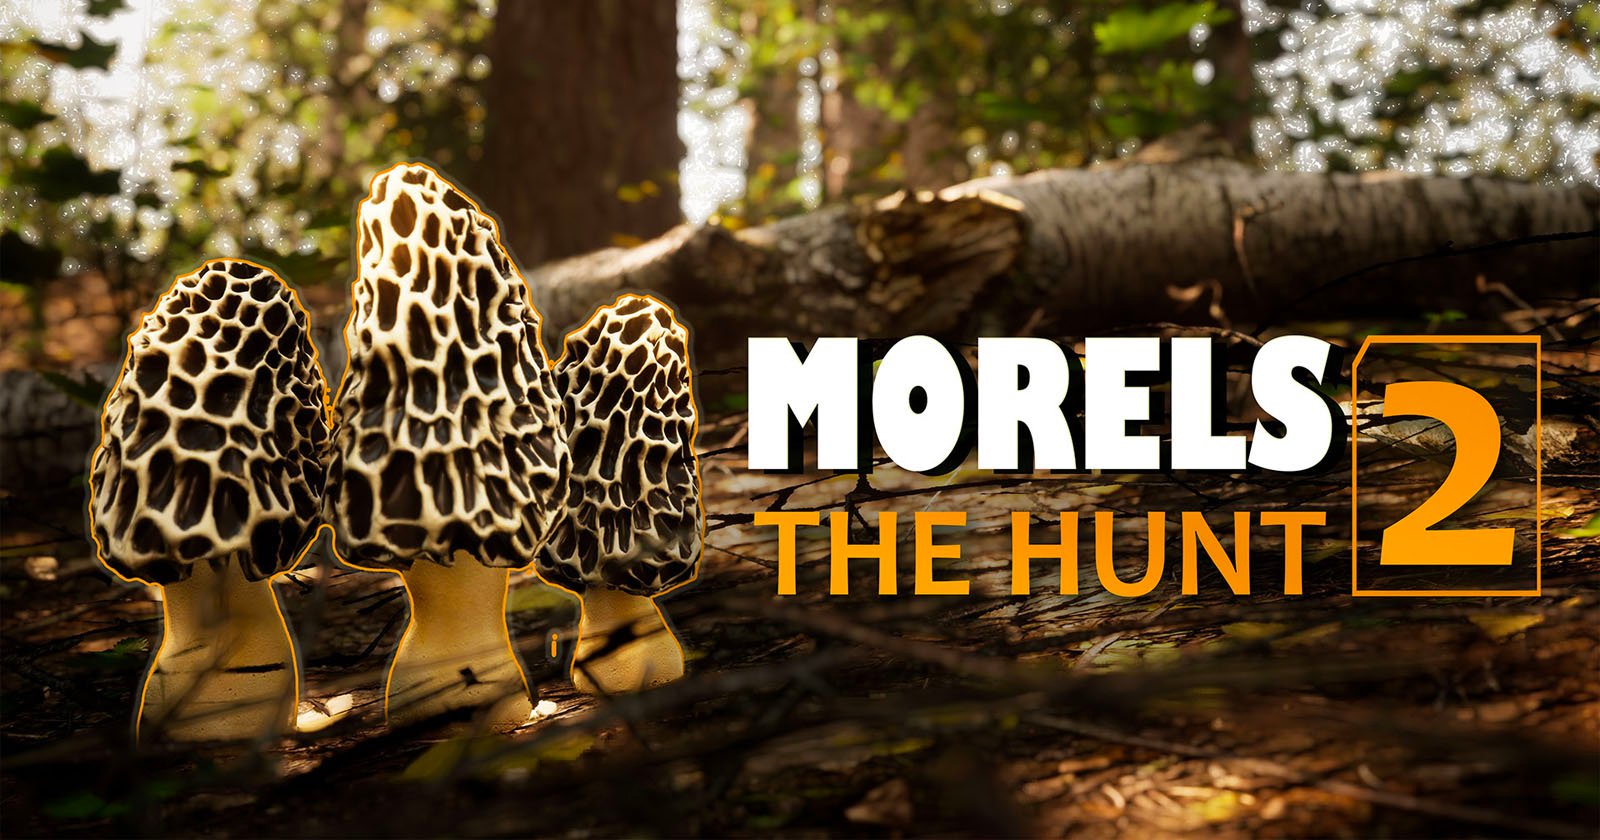 Morels The Hunt 2